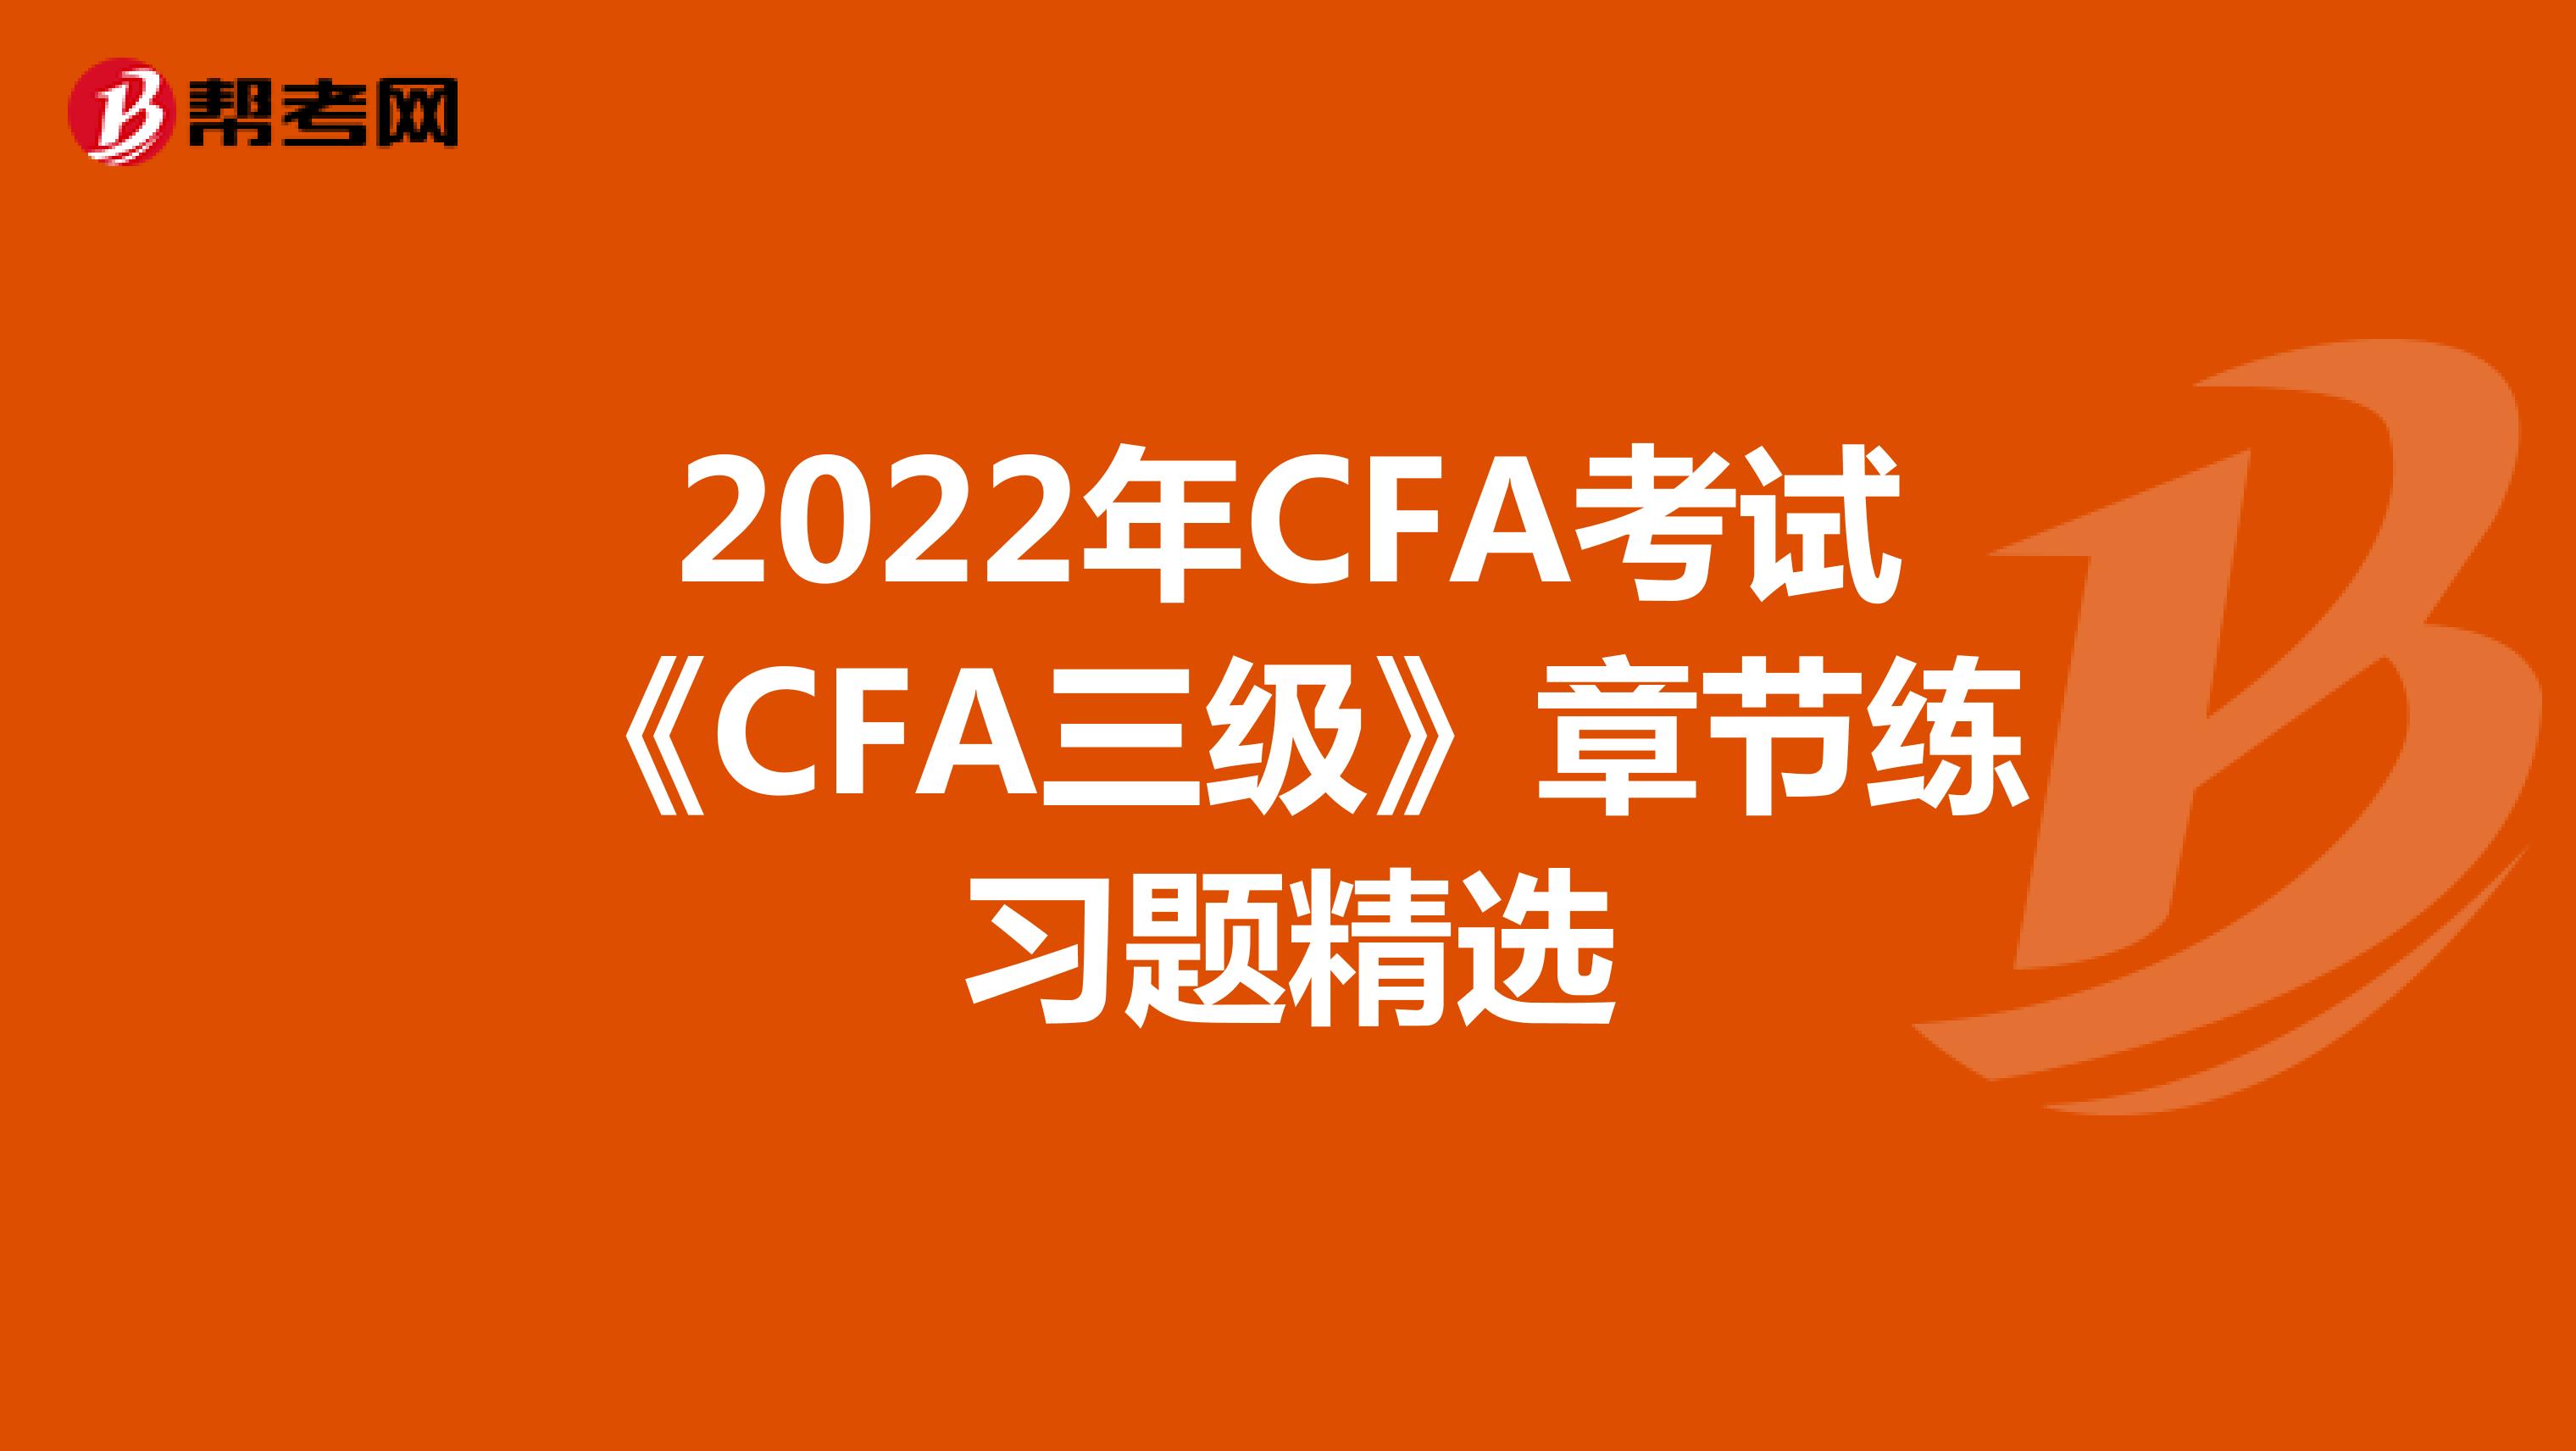 2022年CFA考试《CFA三级》章节练习题精选